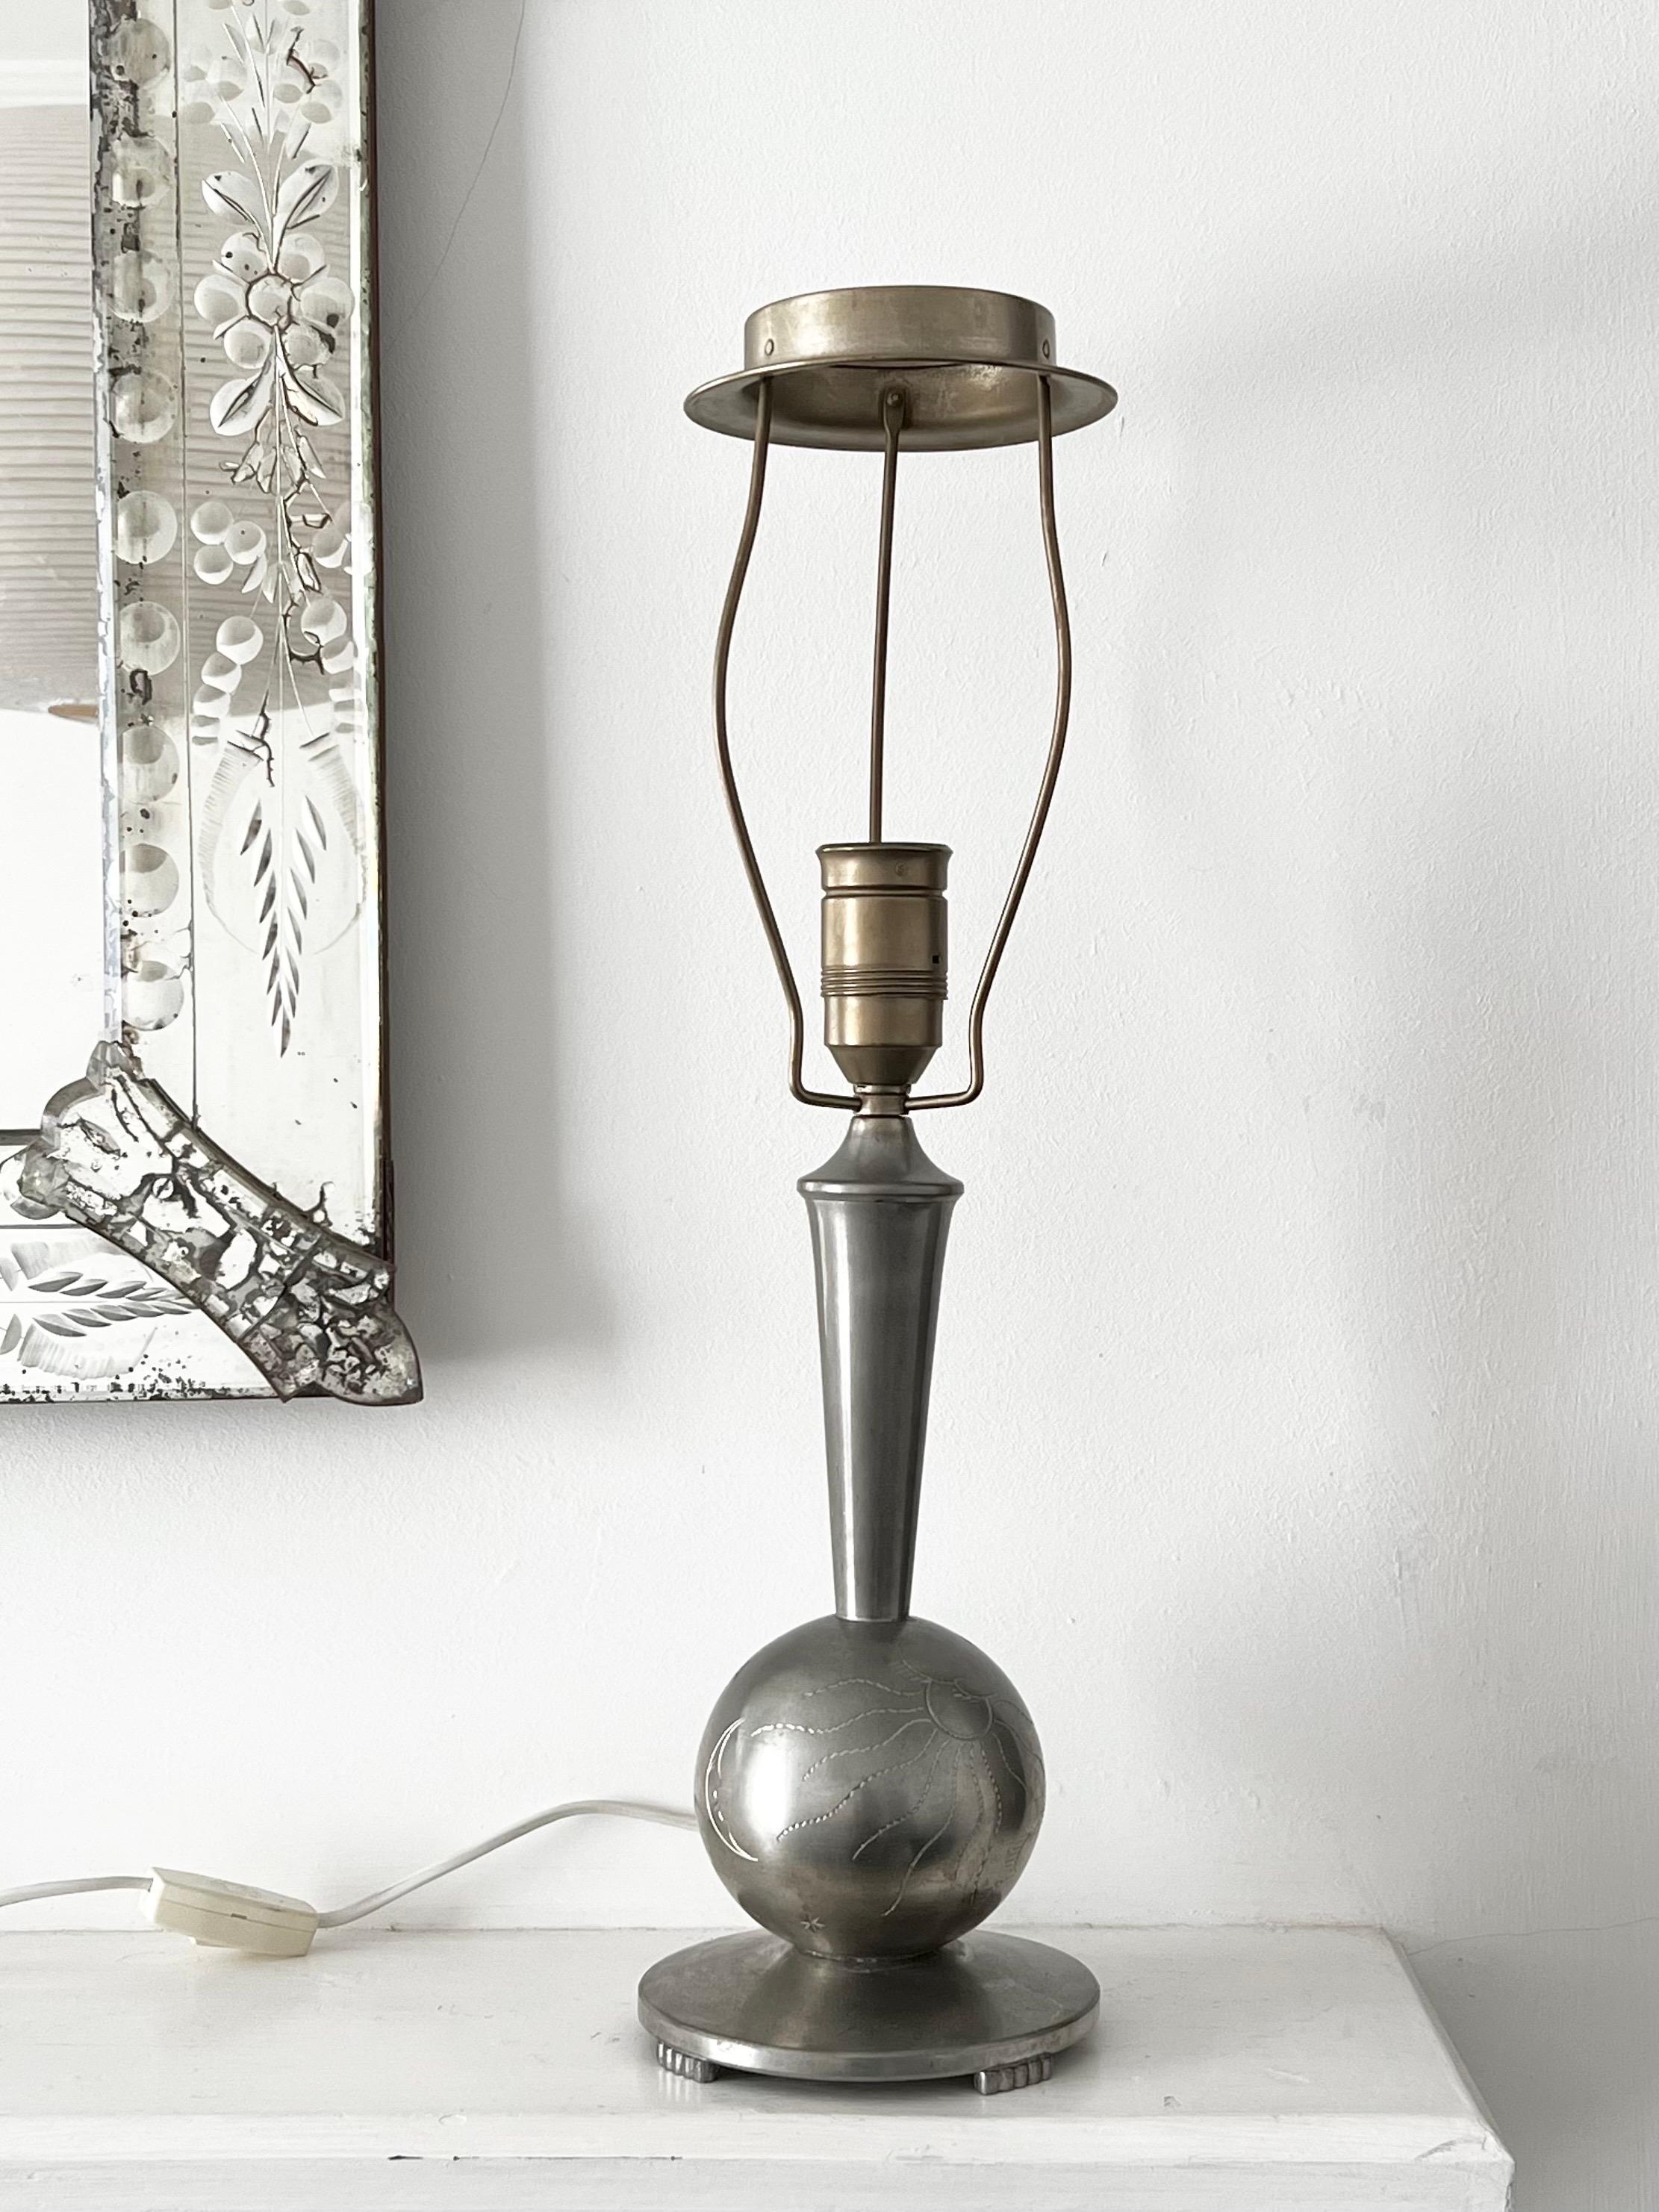 Eine hübsche Tischlampe aus weißem Metall (Zinn oder Zinn), hergestellt in Schweden, 1930er Jahre. Schwedische Anmut oder Art-Déco-Stil. 

Das Design besteht aus einem runden Sockel, der auf vier Füßen steht, und einer zentralen Kugel mit Gravuren,